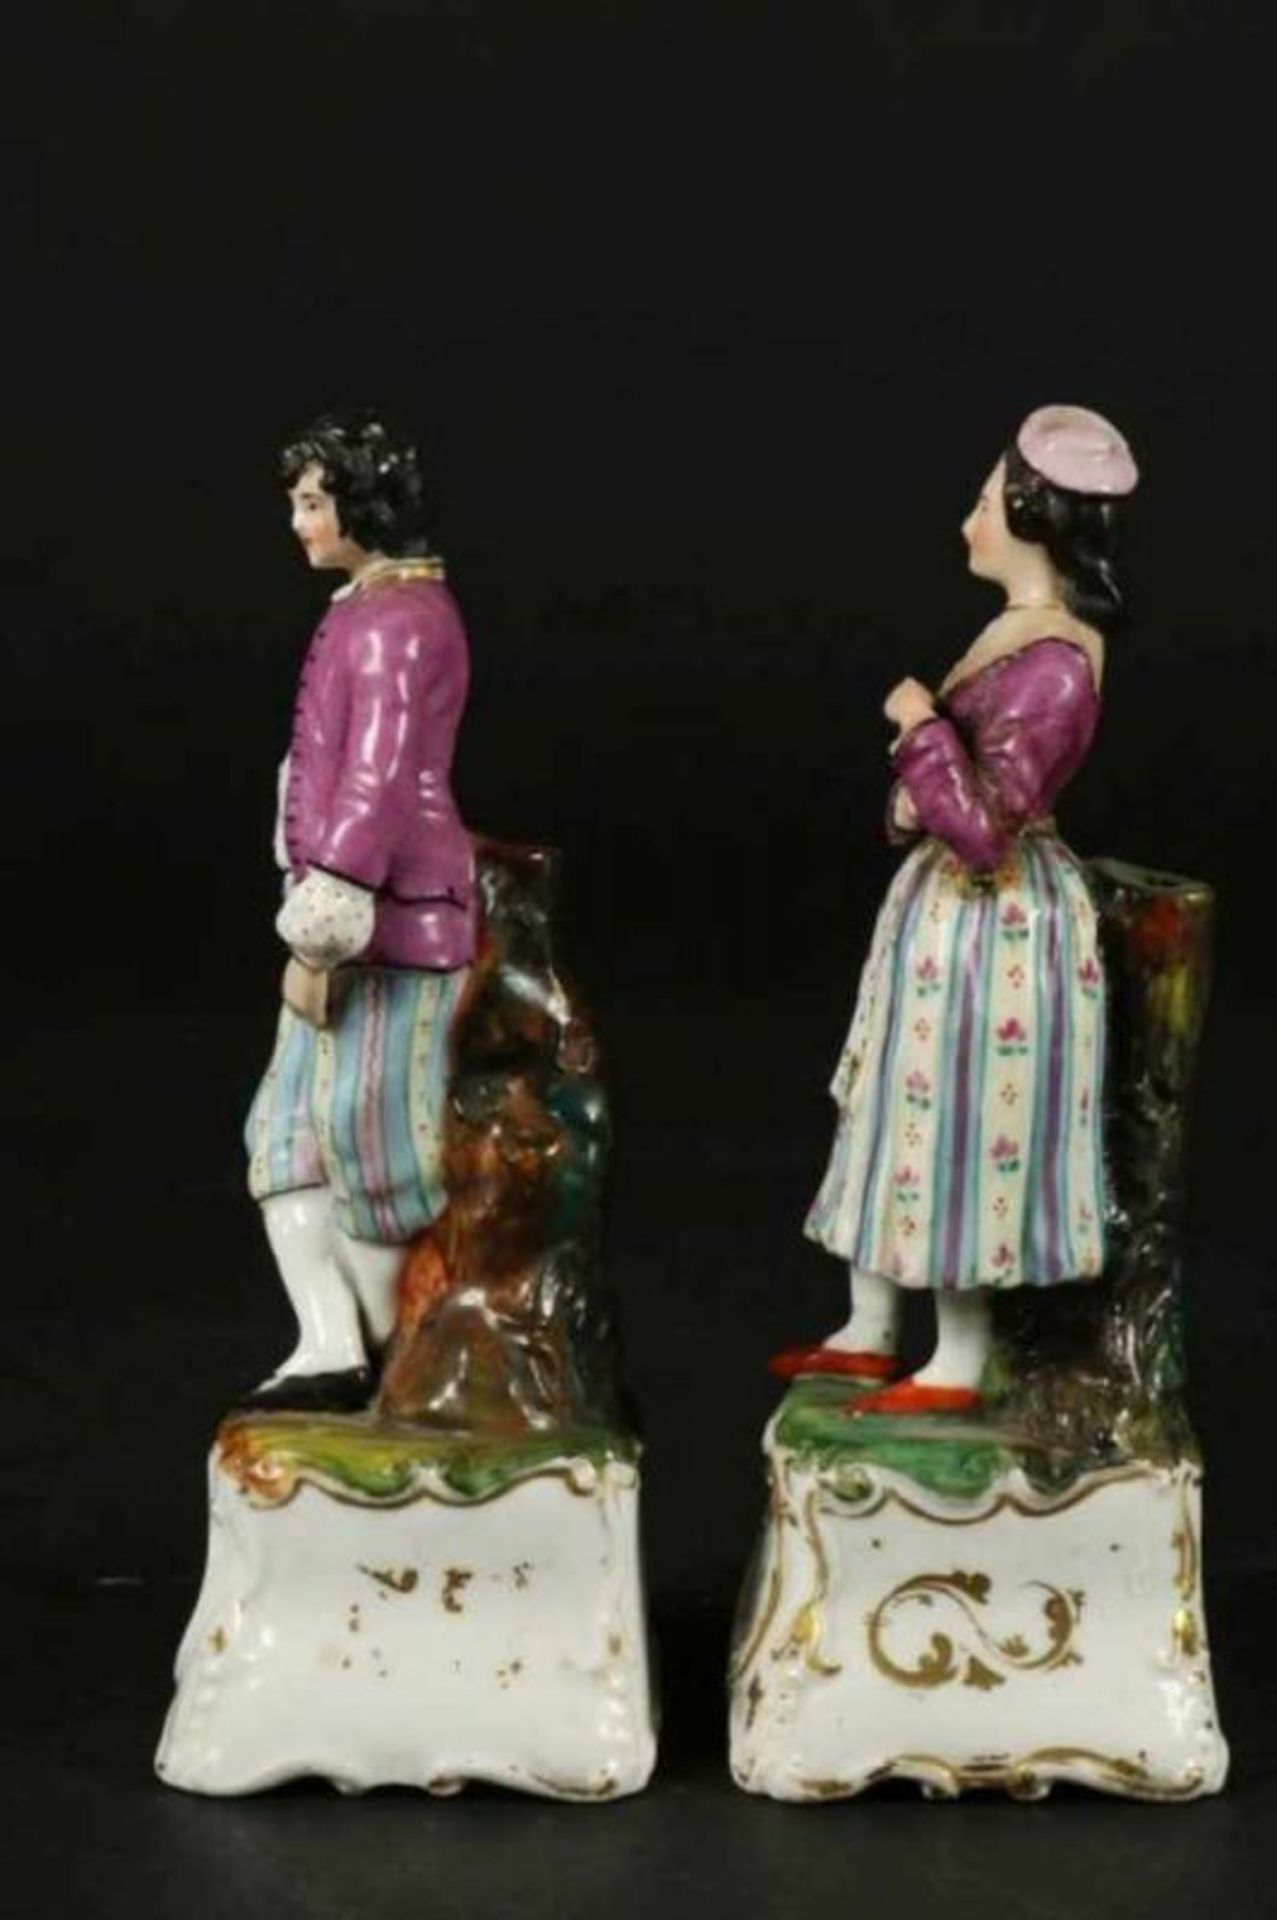 Stel porseleinen likeurflesjes als echtpaar, Duitsland 19e eeuw, h. 19 cm. - Bild 4 aus 4